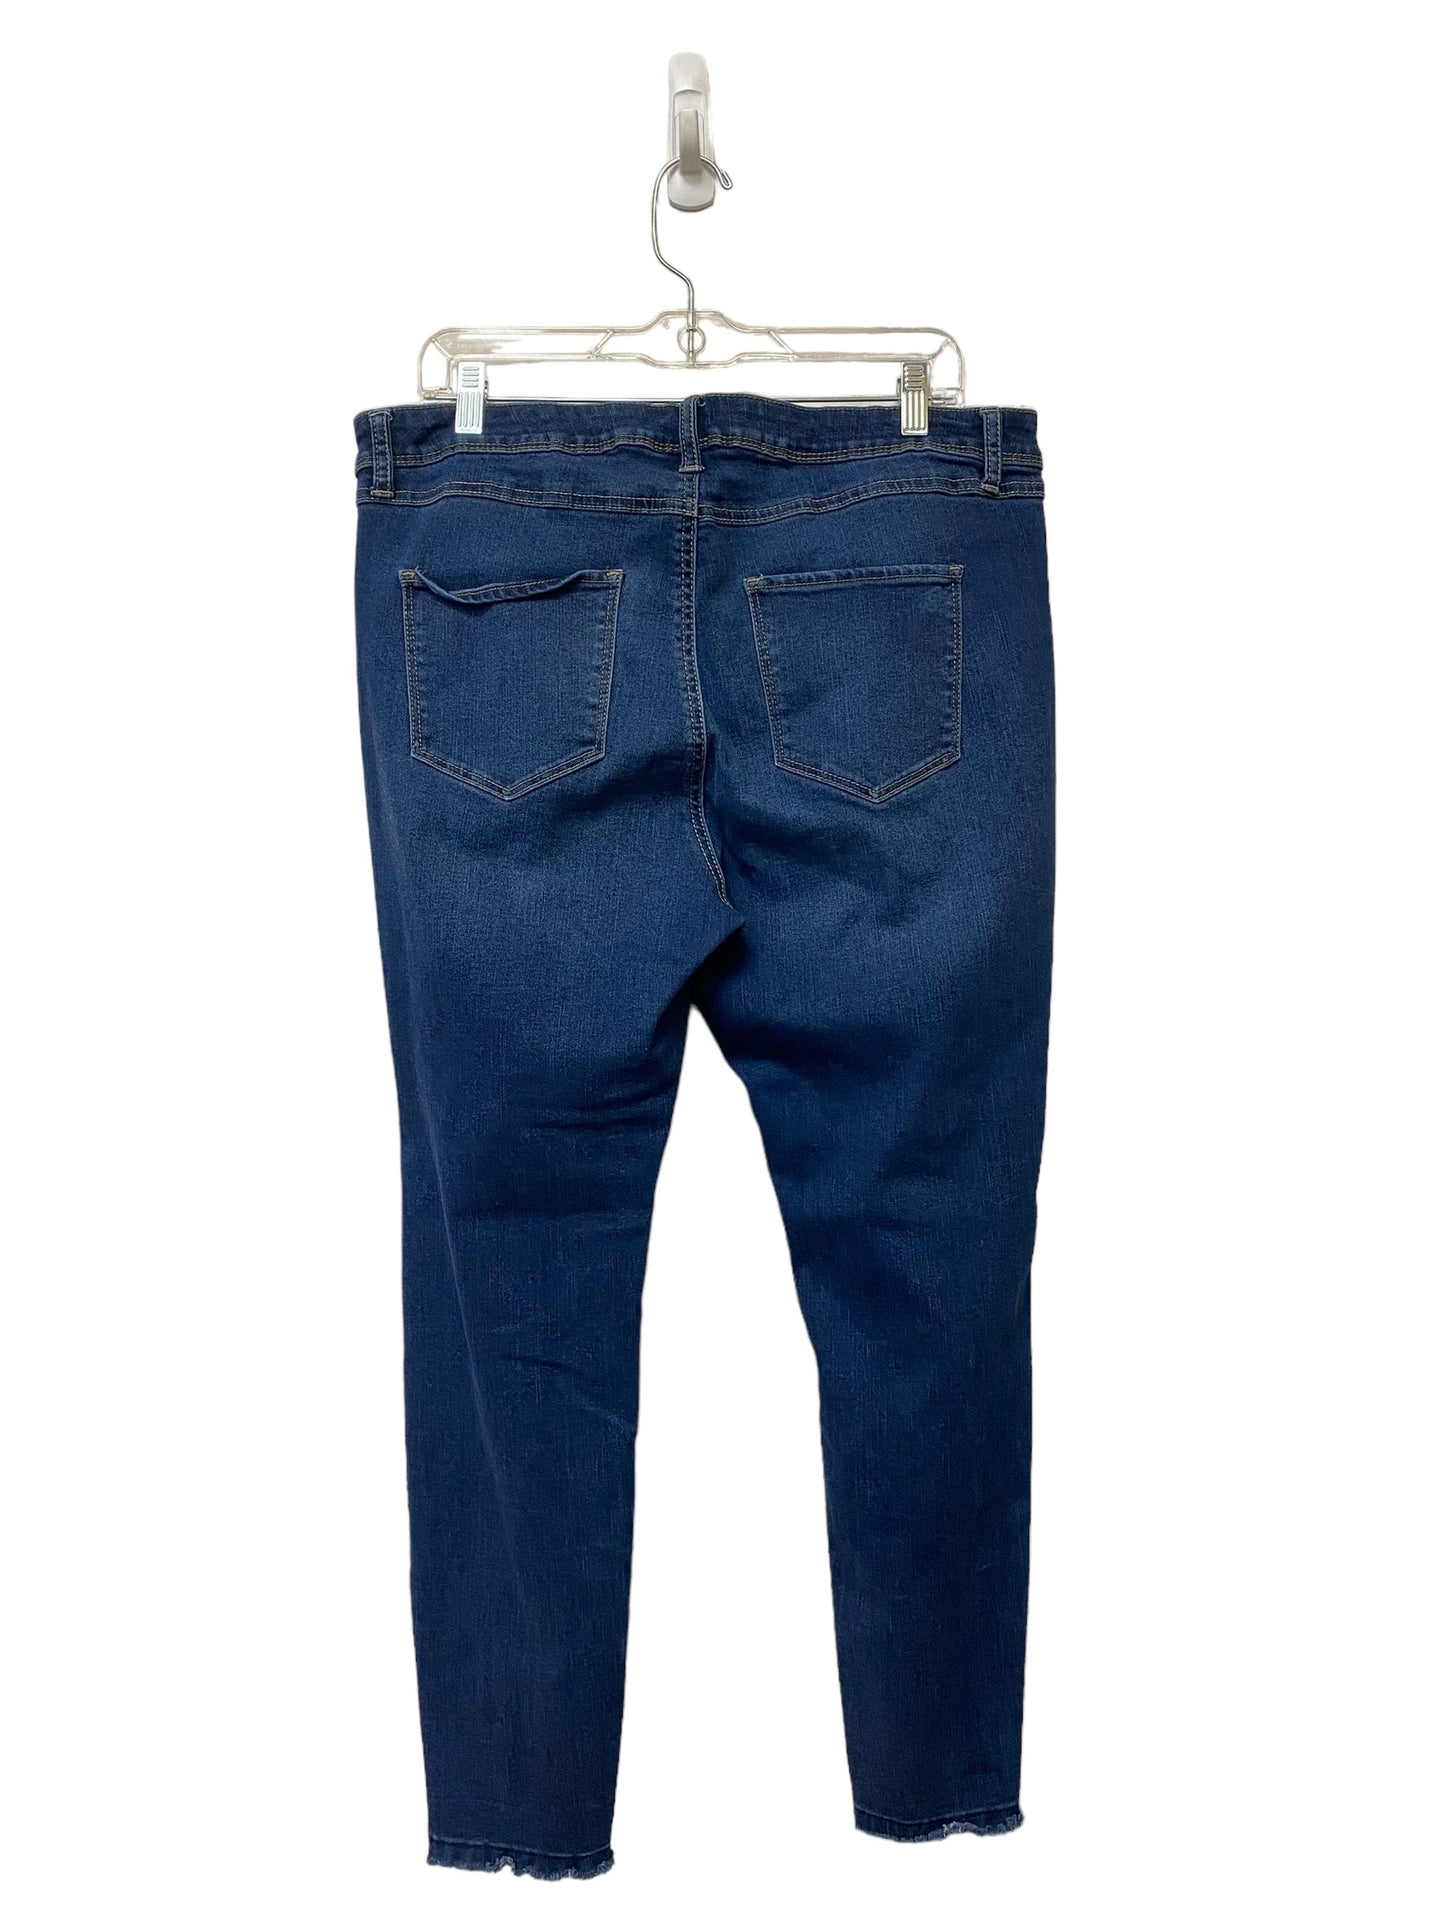 Blue Denim Jeans Skinny Dip, Size 18